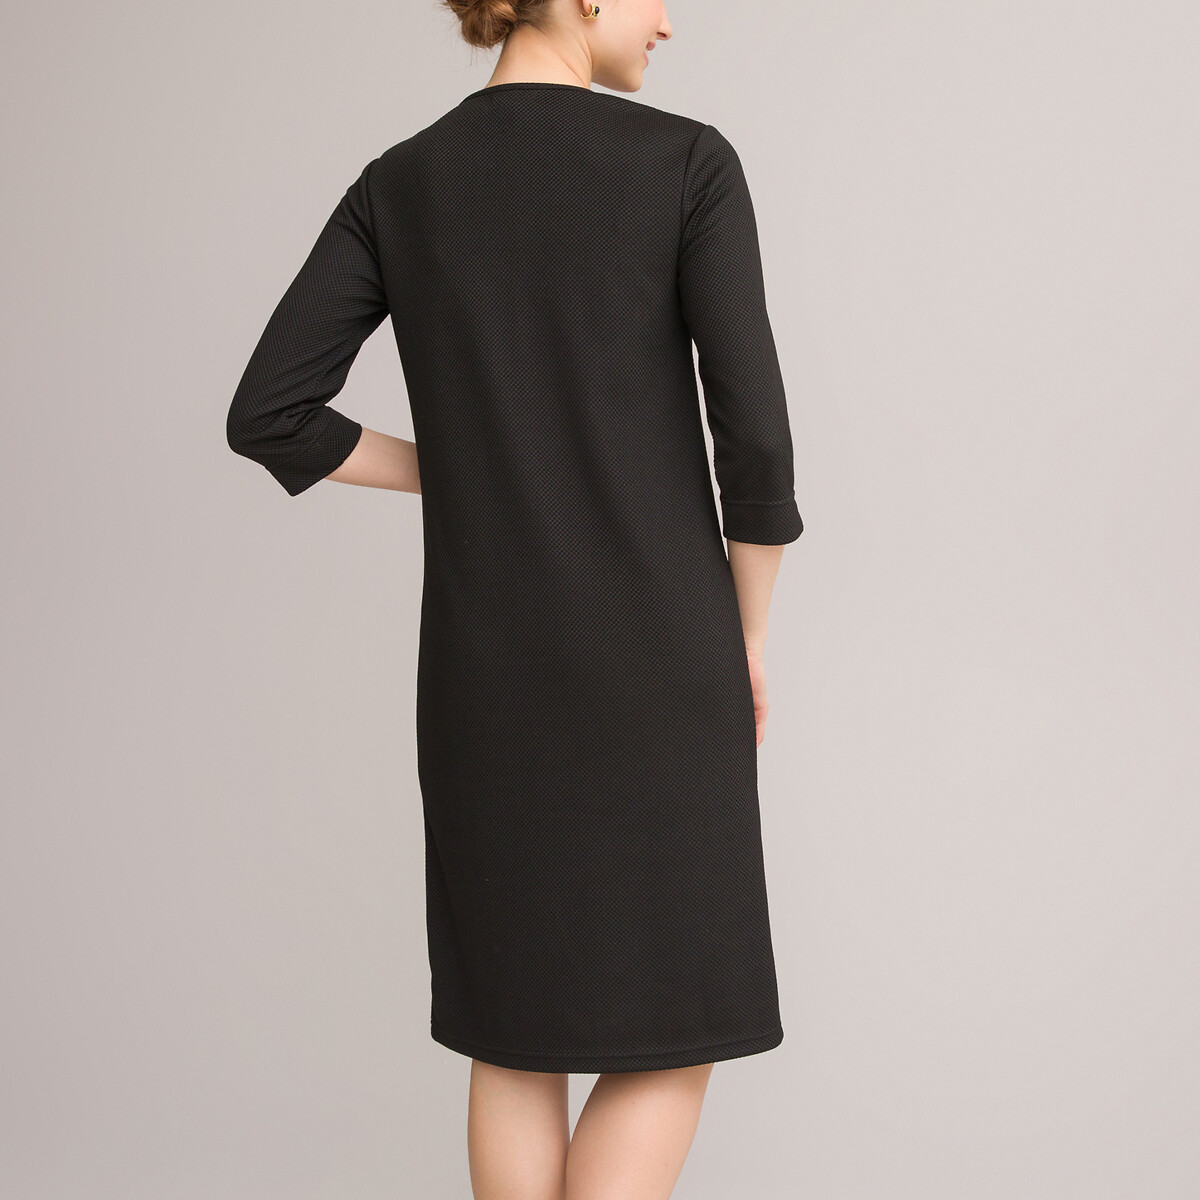 Платье ANNE WEYBURN Платье Прямое средней длины рукава 34 52 черный, размер 52 - фото 4